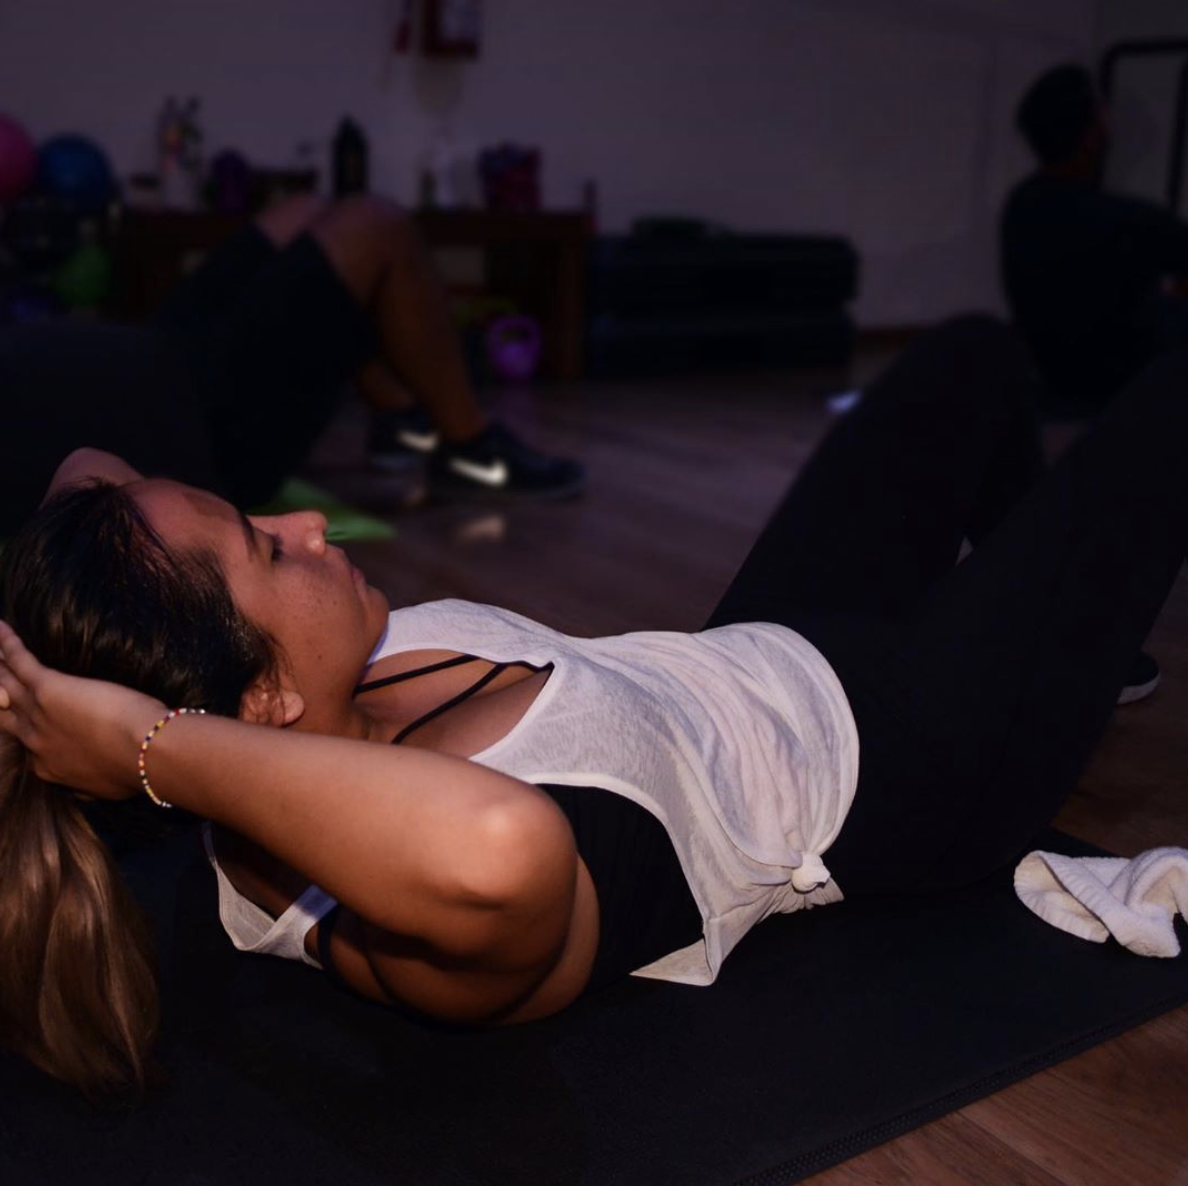 Pilates MatSi estas lista para conocer más sobre Pilates y profundizar en tu práctica, trabajando la estabilidad, fuerza y equilibrio con tu propio cuerpo, esta es la clase para ti!